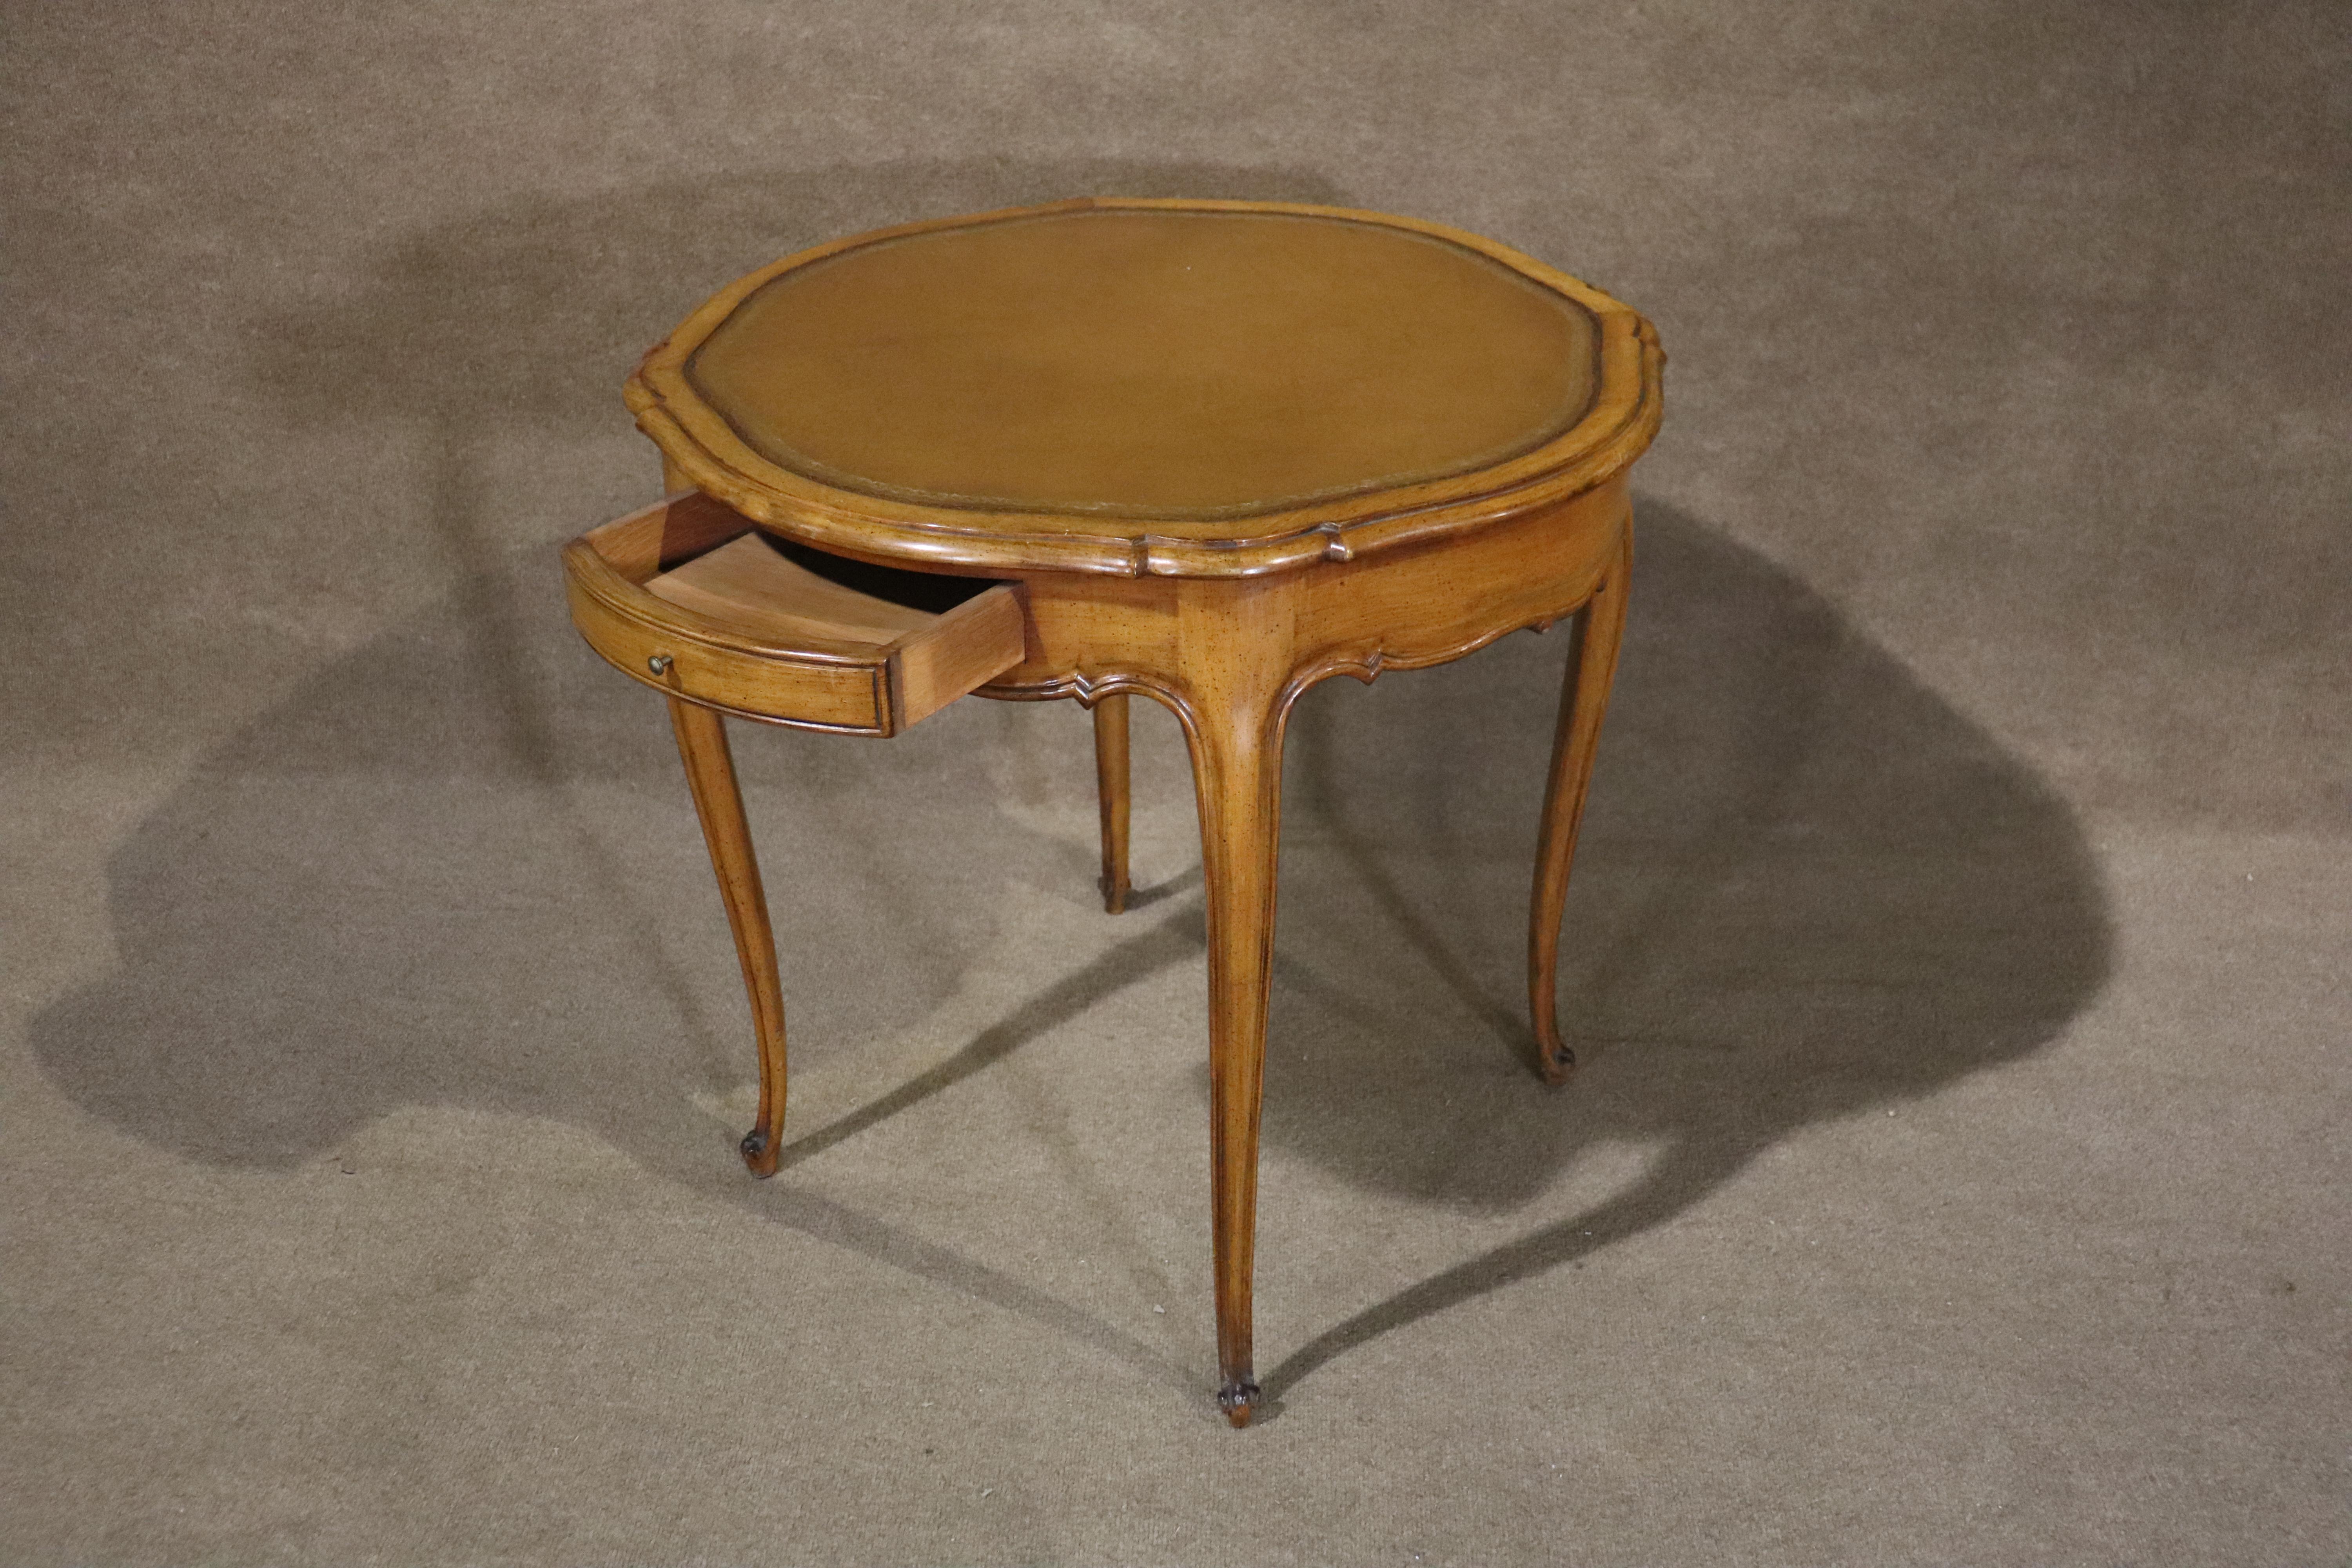 Cette table de style français a un plateau en cuir, des pieds sculptés et un tiroir.
Veuillez confirmer le lieu NY ou NJ